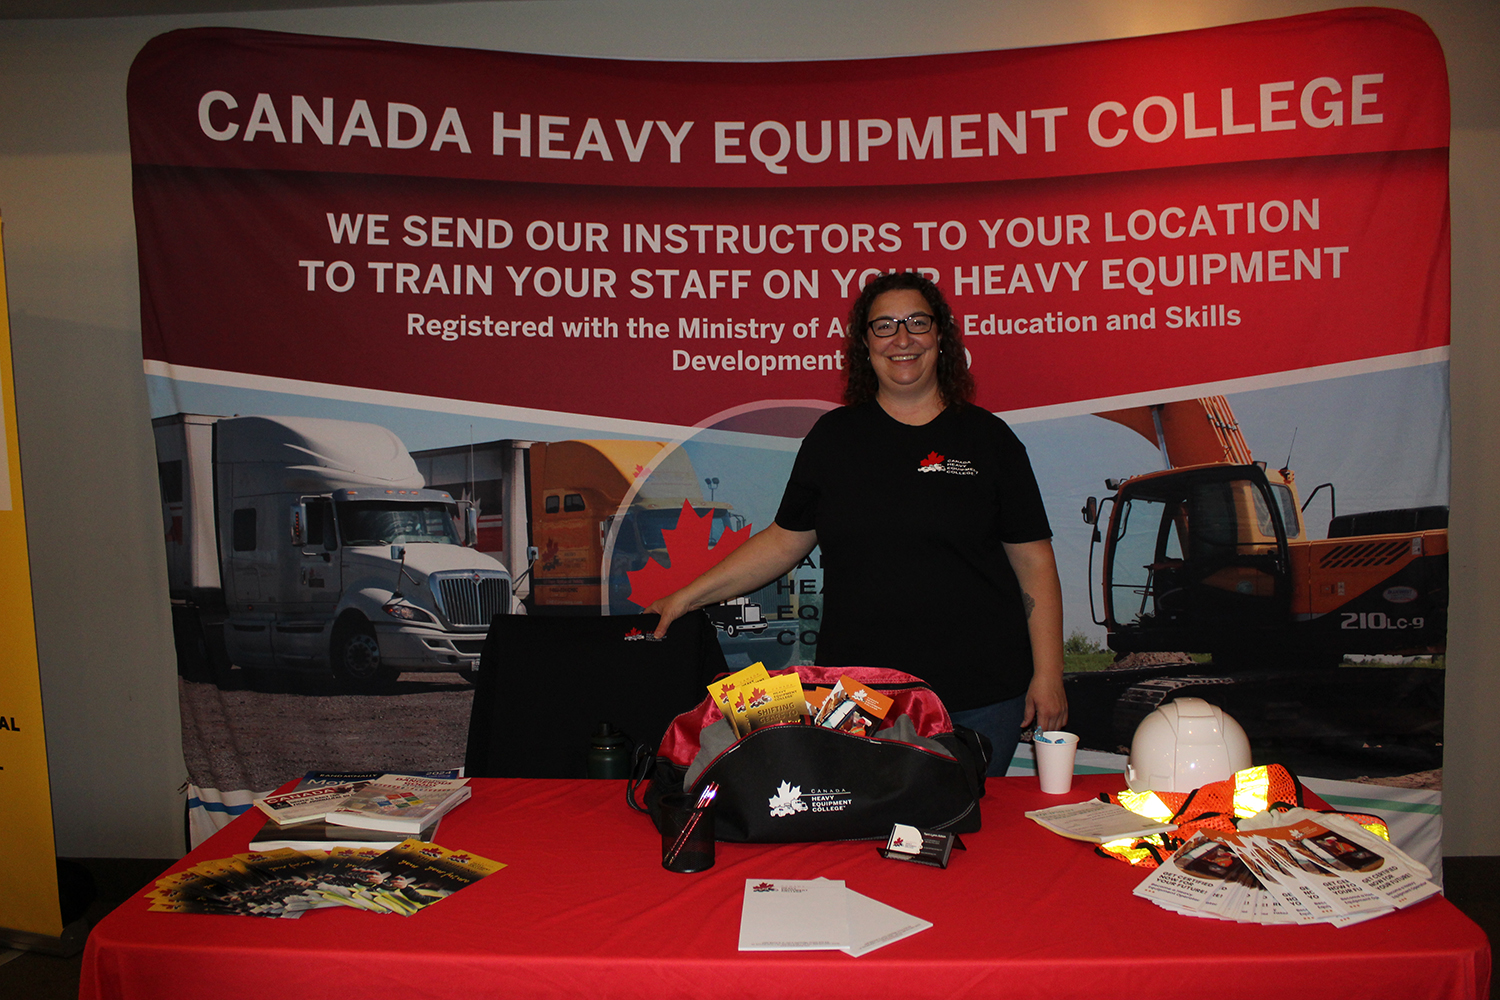 A representative from Canada Heavy Equipment College